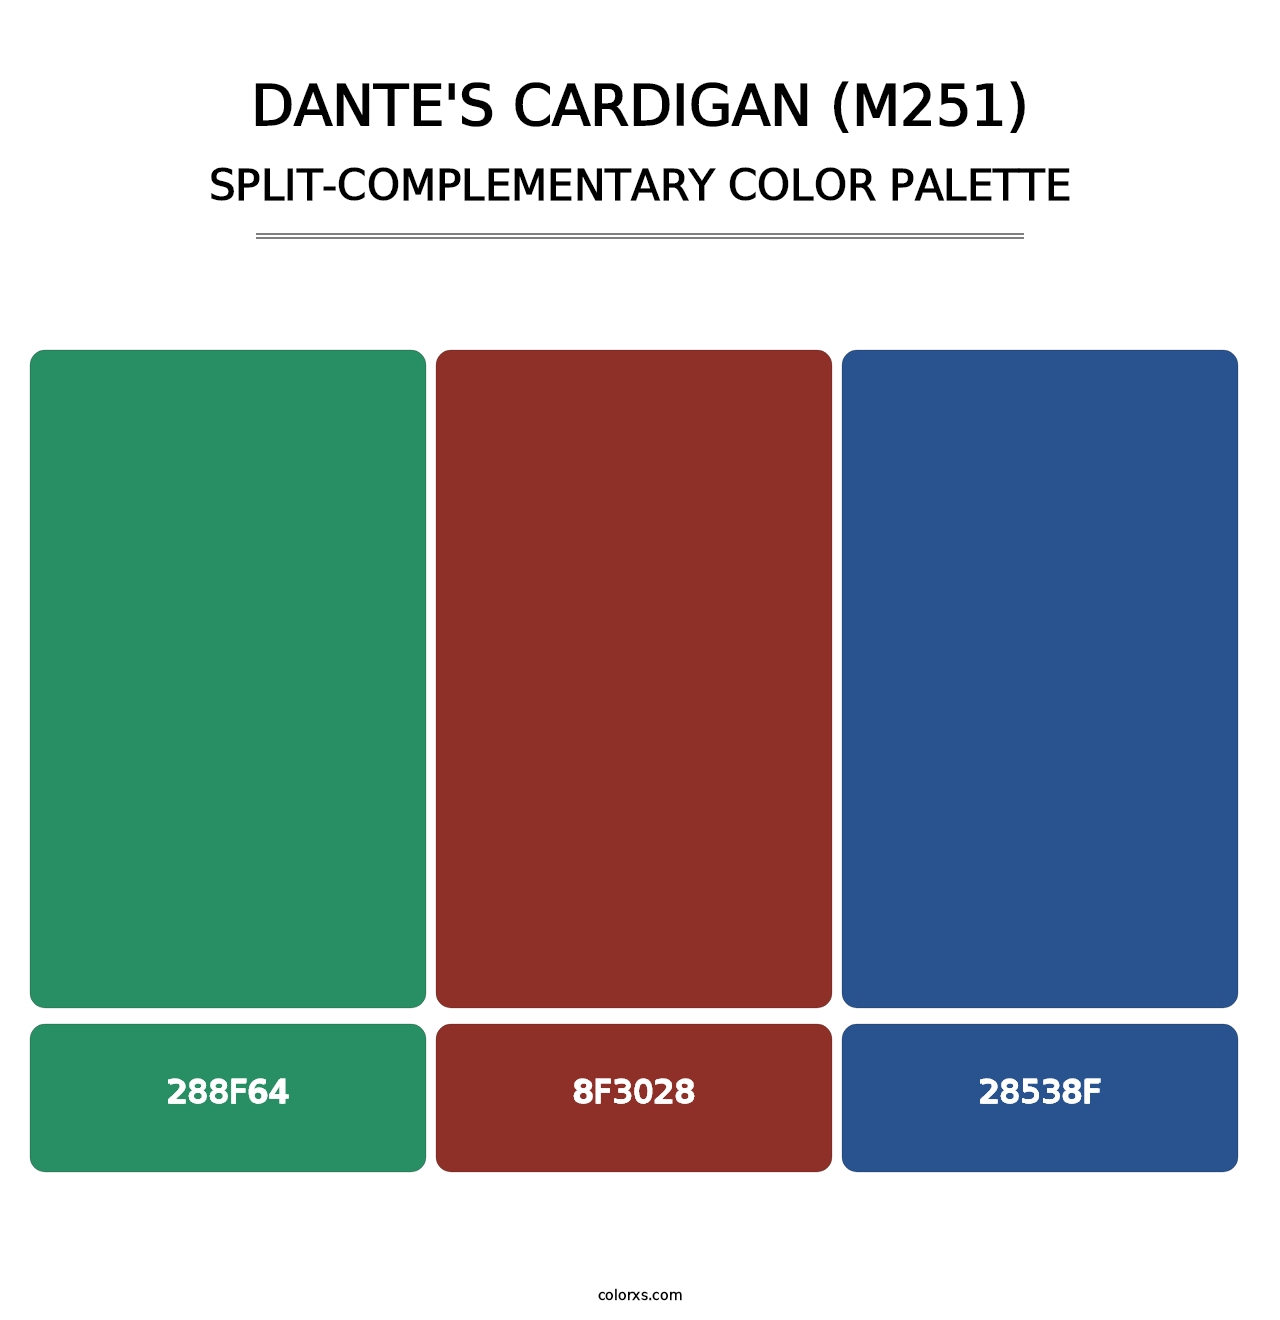 Dante's Cardigan (M251) - Split-Complementary Color Palette